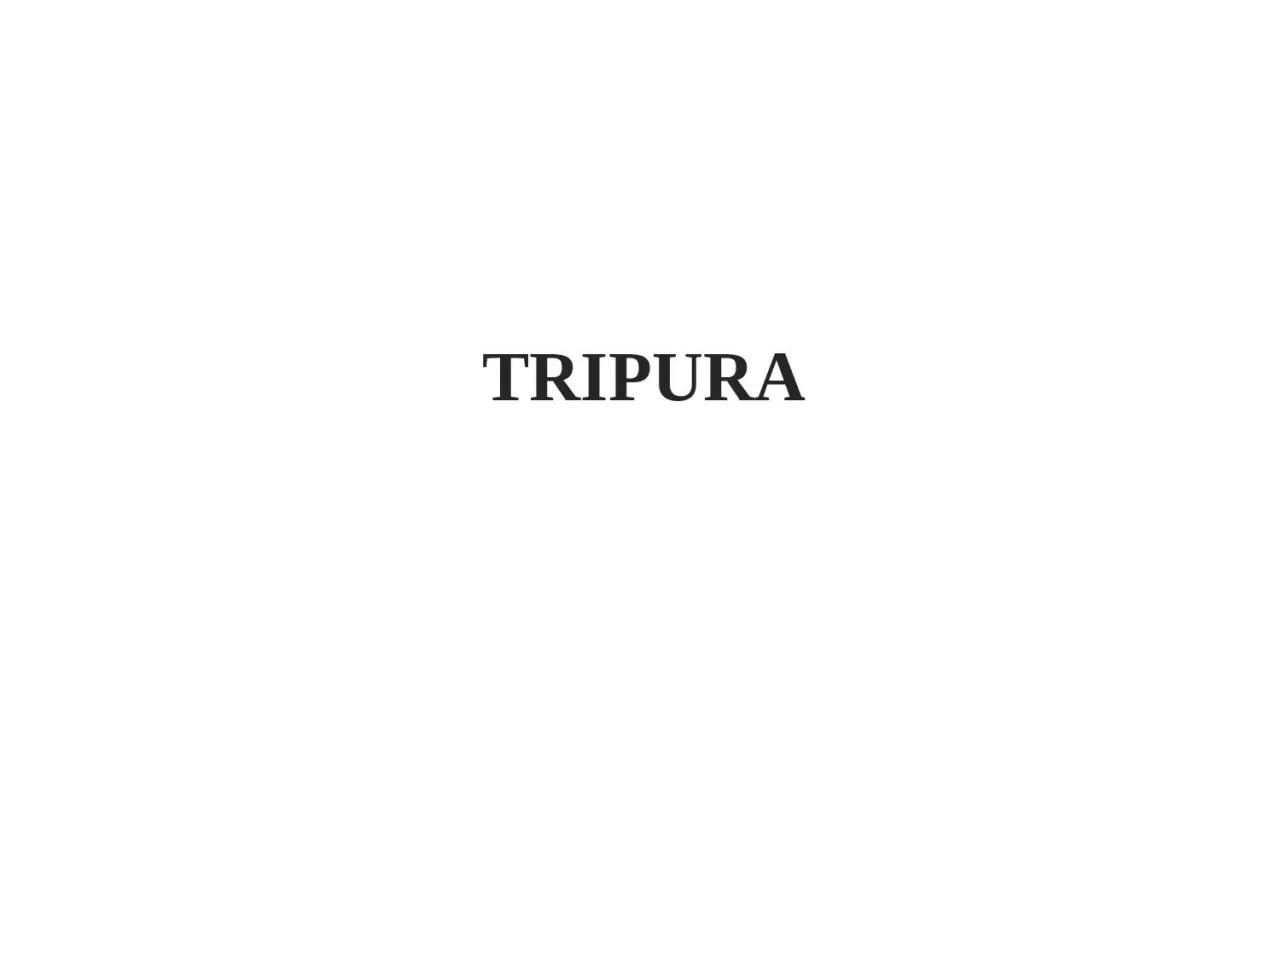 TRIPURA Best Practices: